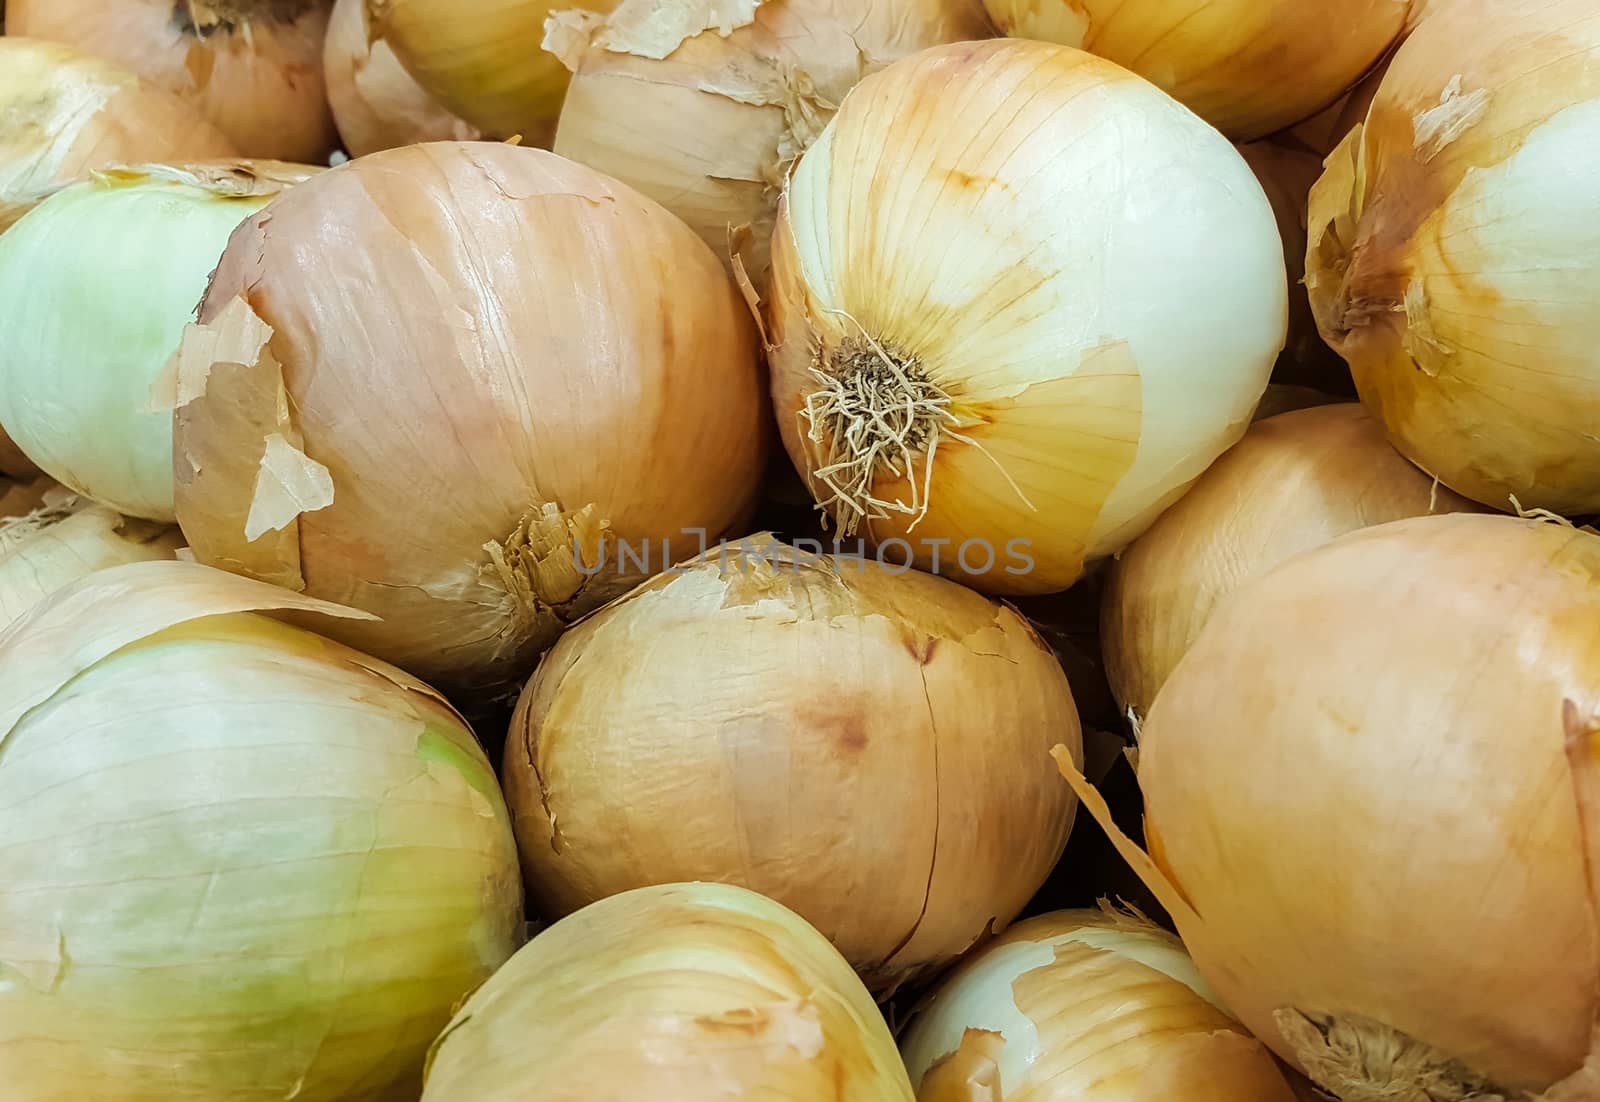 Fresh onions in the market by zeffss